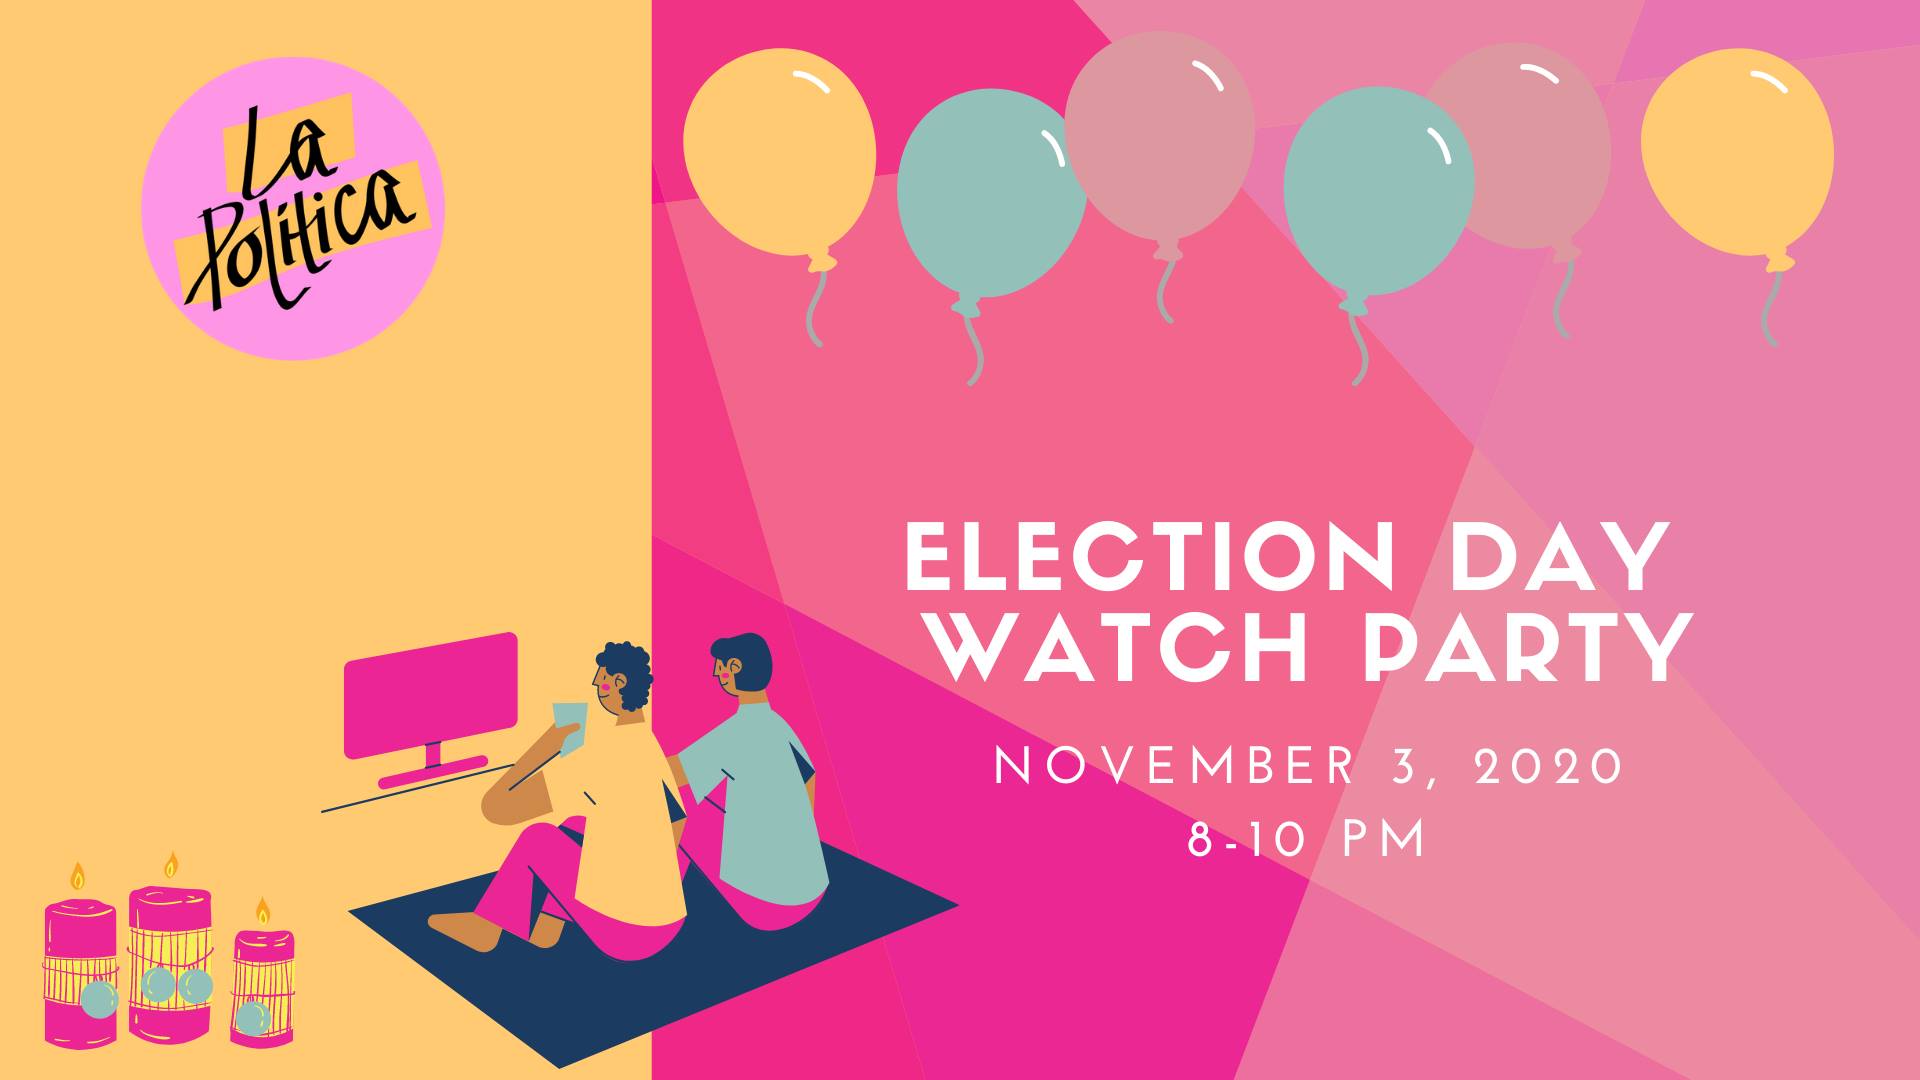 La Politica Watch Party